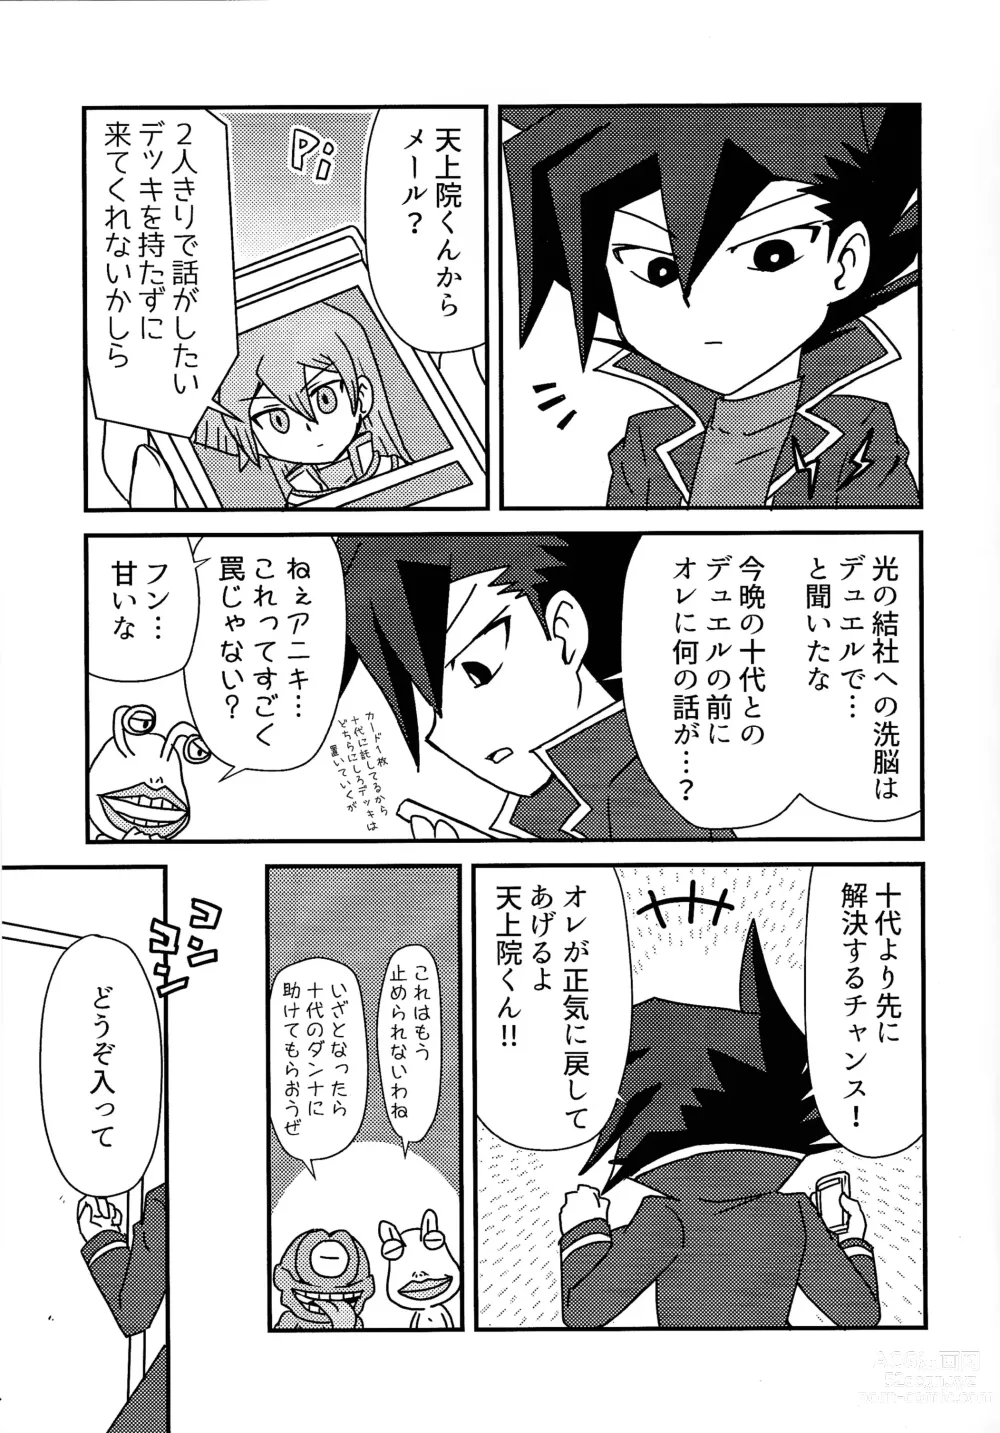 Page 4 of doujinshi Kuro no ore ga mata shiroku some rareyou to shite iru yodaga!?